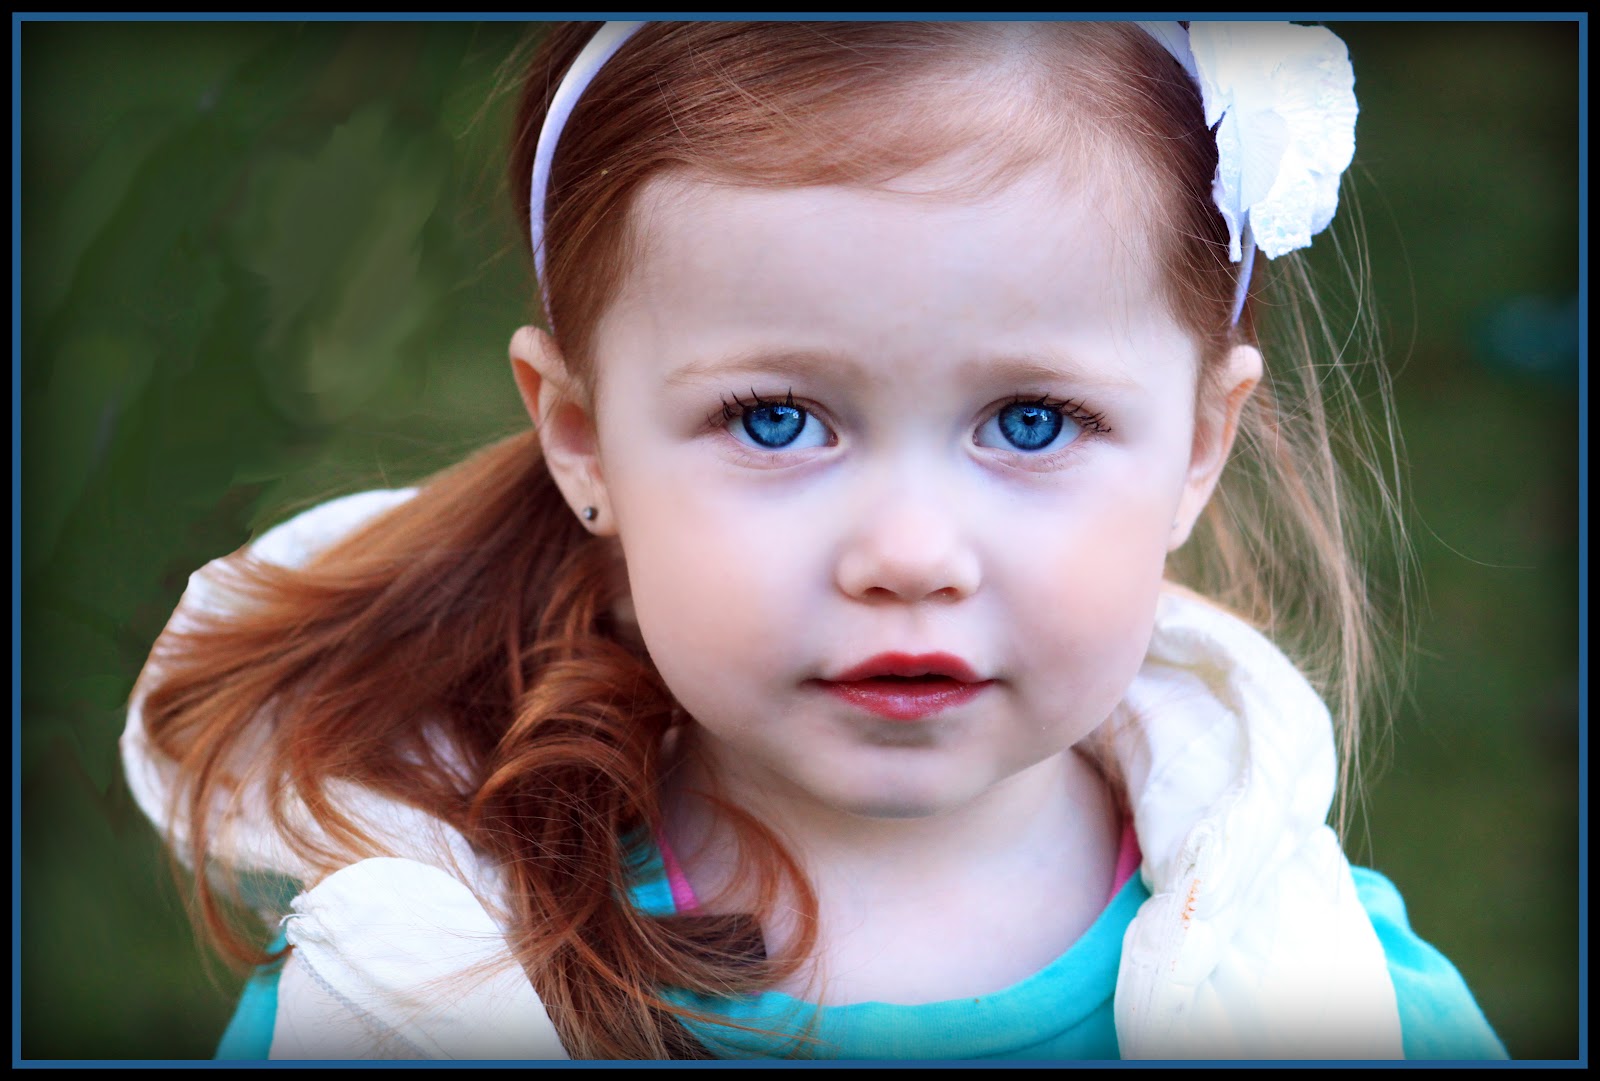 Голубоглазые родственники. Bebek. Girl with Fair hair and Blue Eyes picture for Kids.